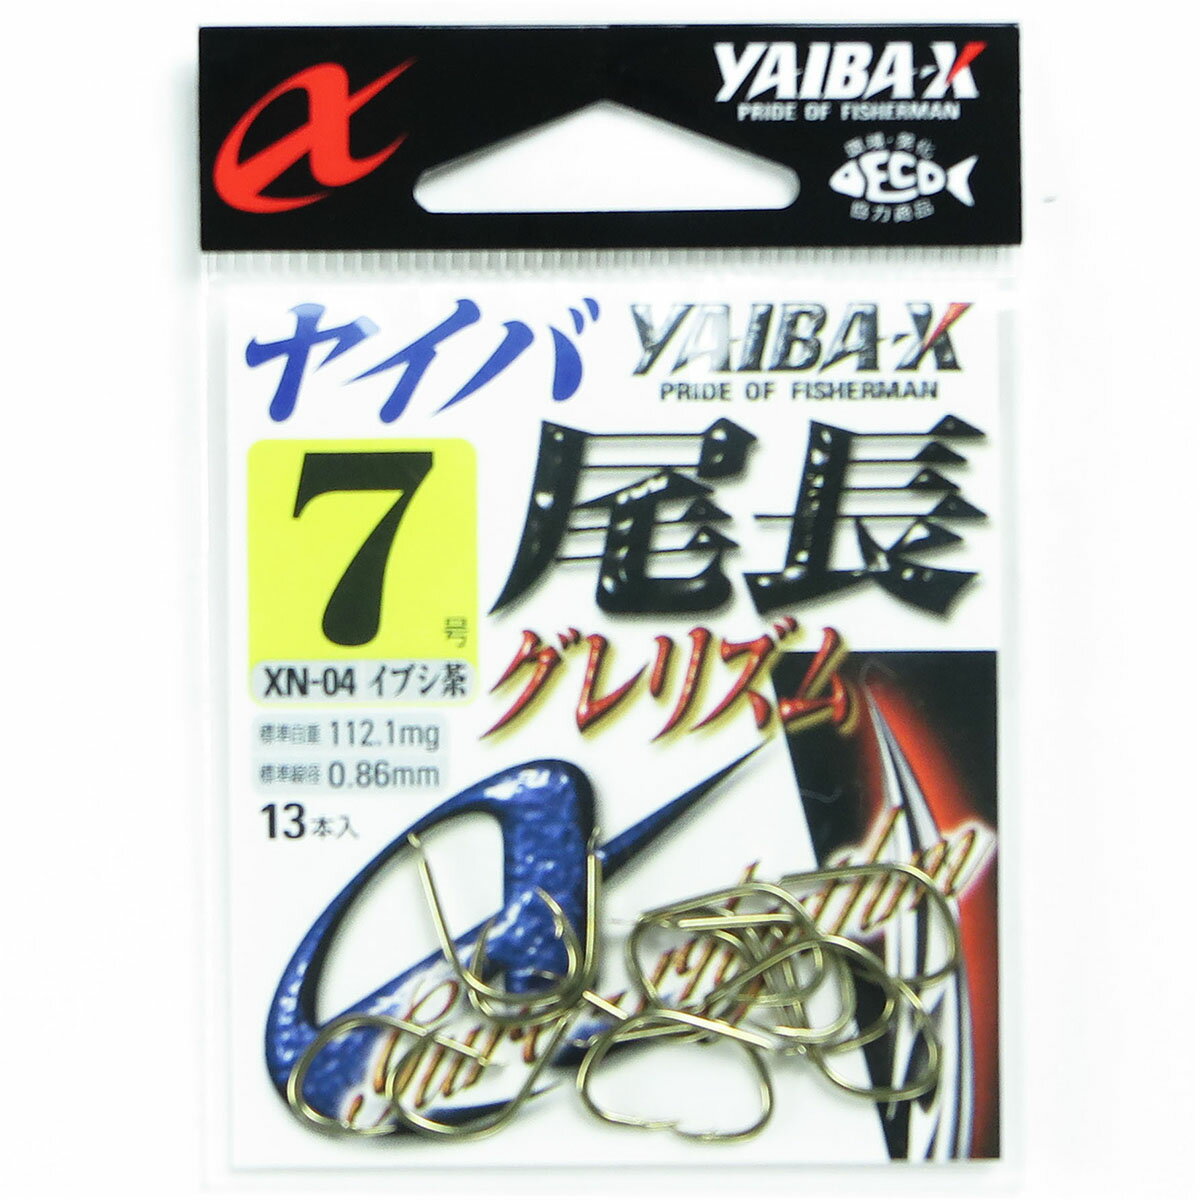 「 ささめ針 SASAME XN-04 ヤイバ尾長 グレリズム 7号 13本入 茶 」  釣り 釣り具 釣具 釣り用品